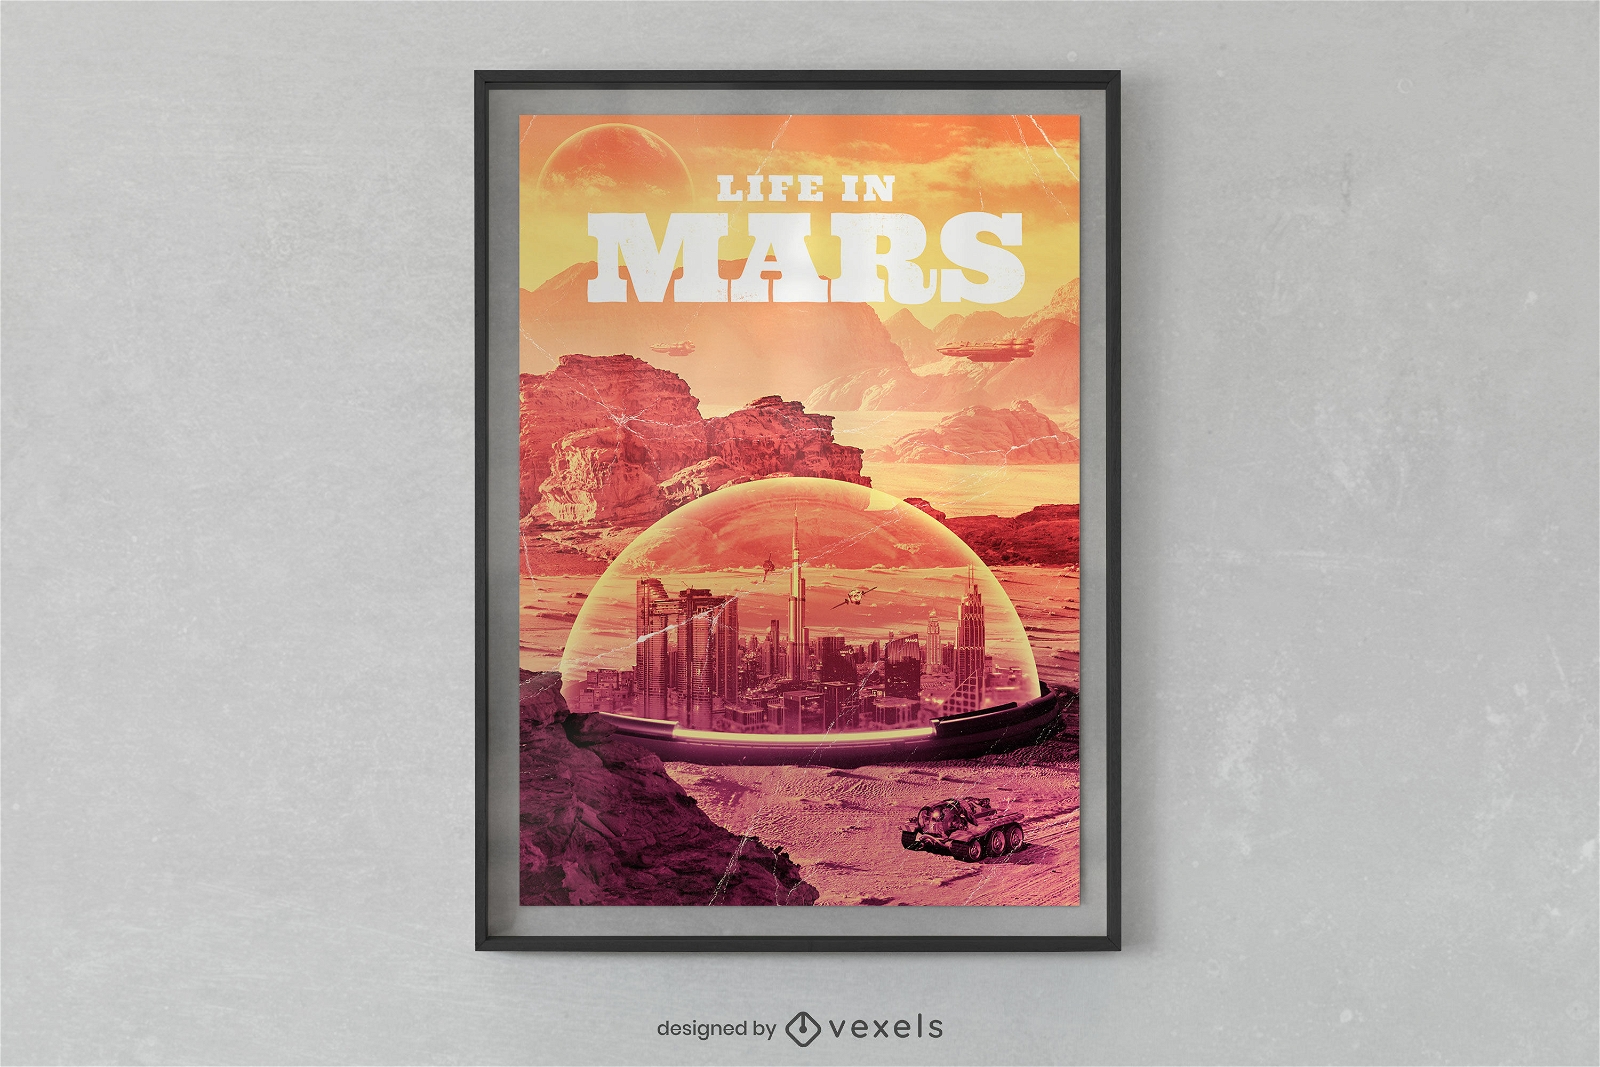 Kuppelleben im Mars-Plakatdesign